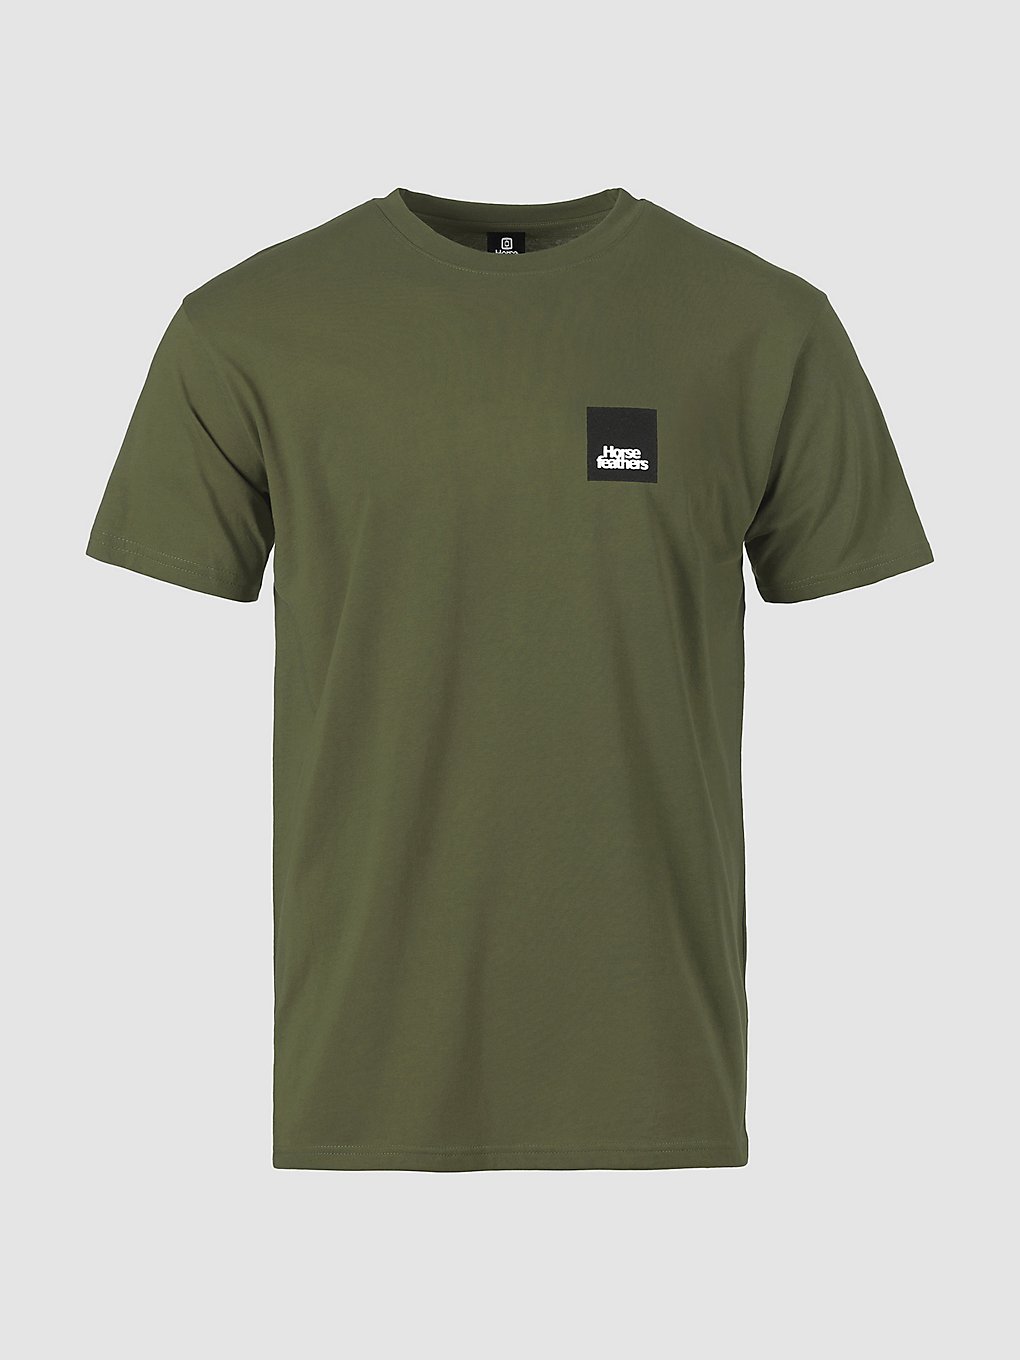 Horsefeathers Minimalist II T-Shirt loden green kaufen